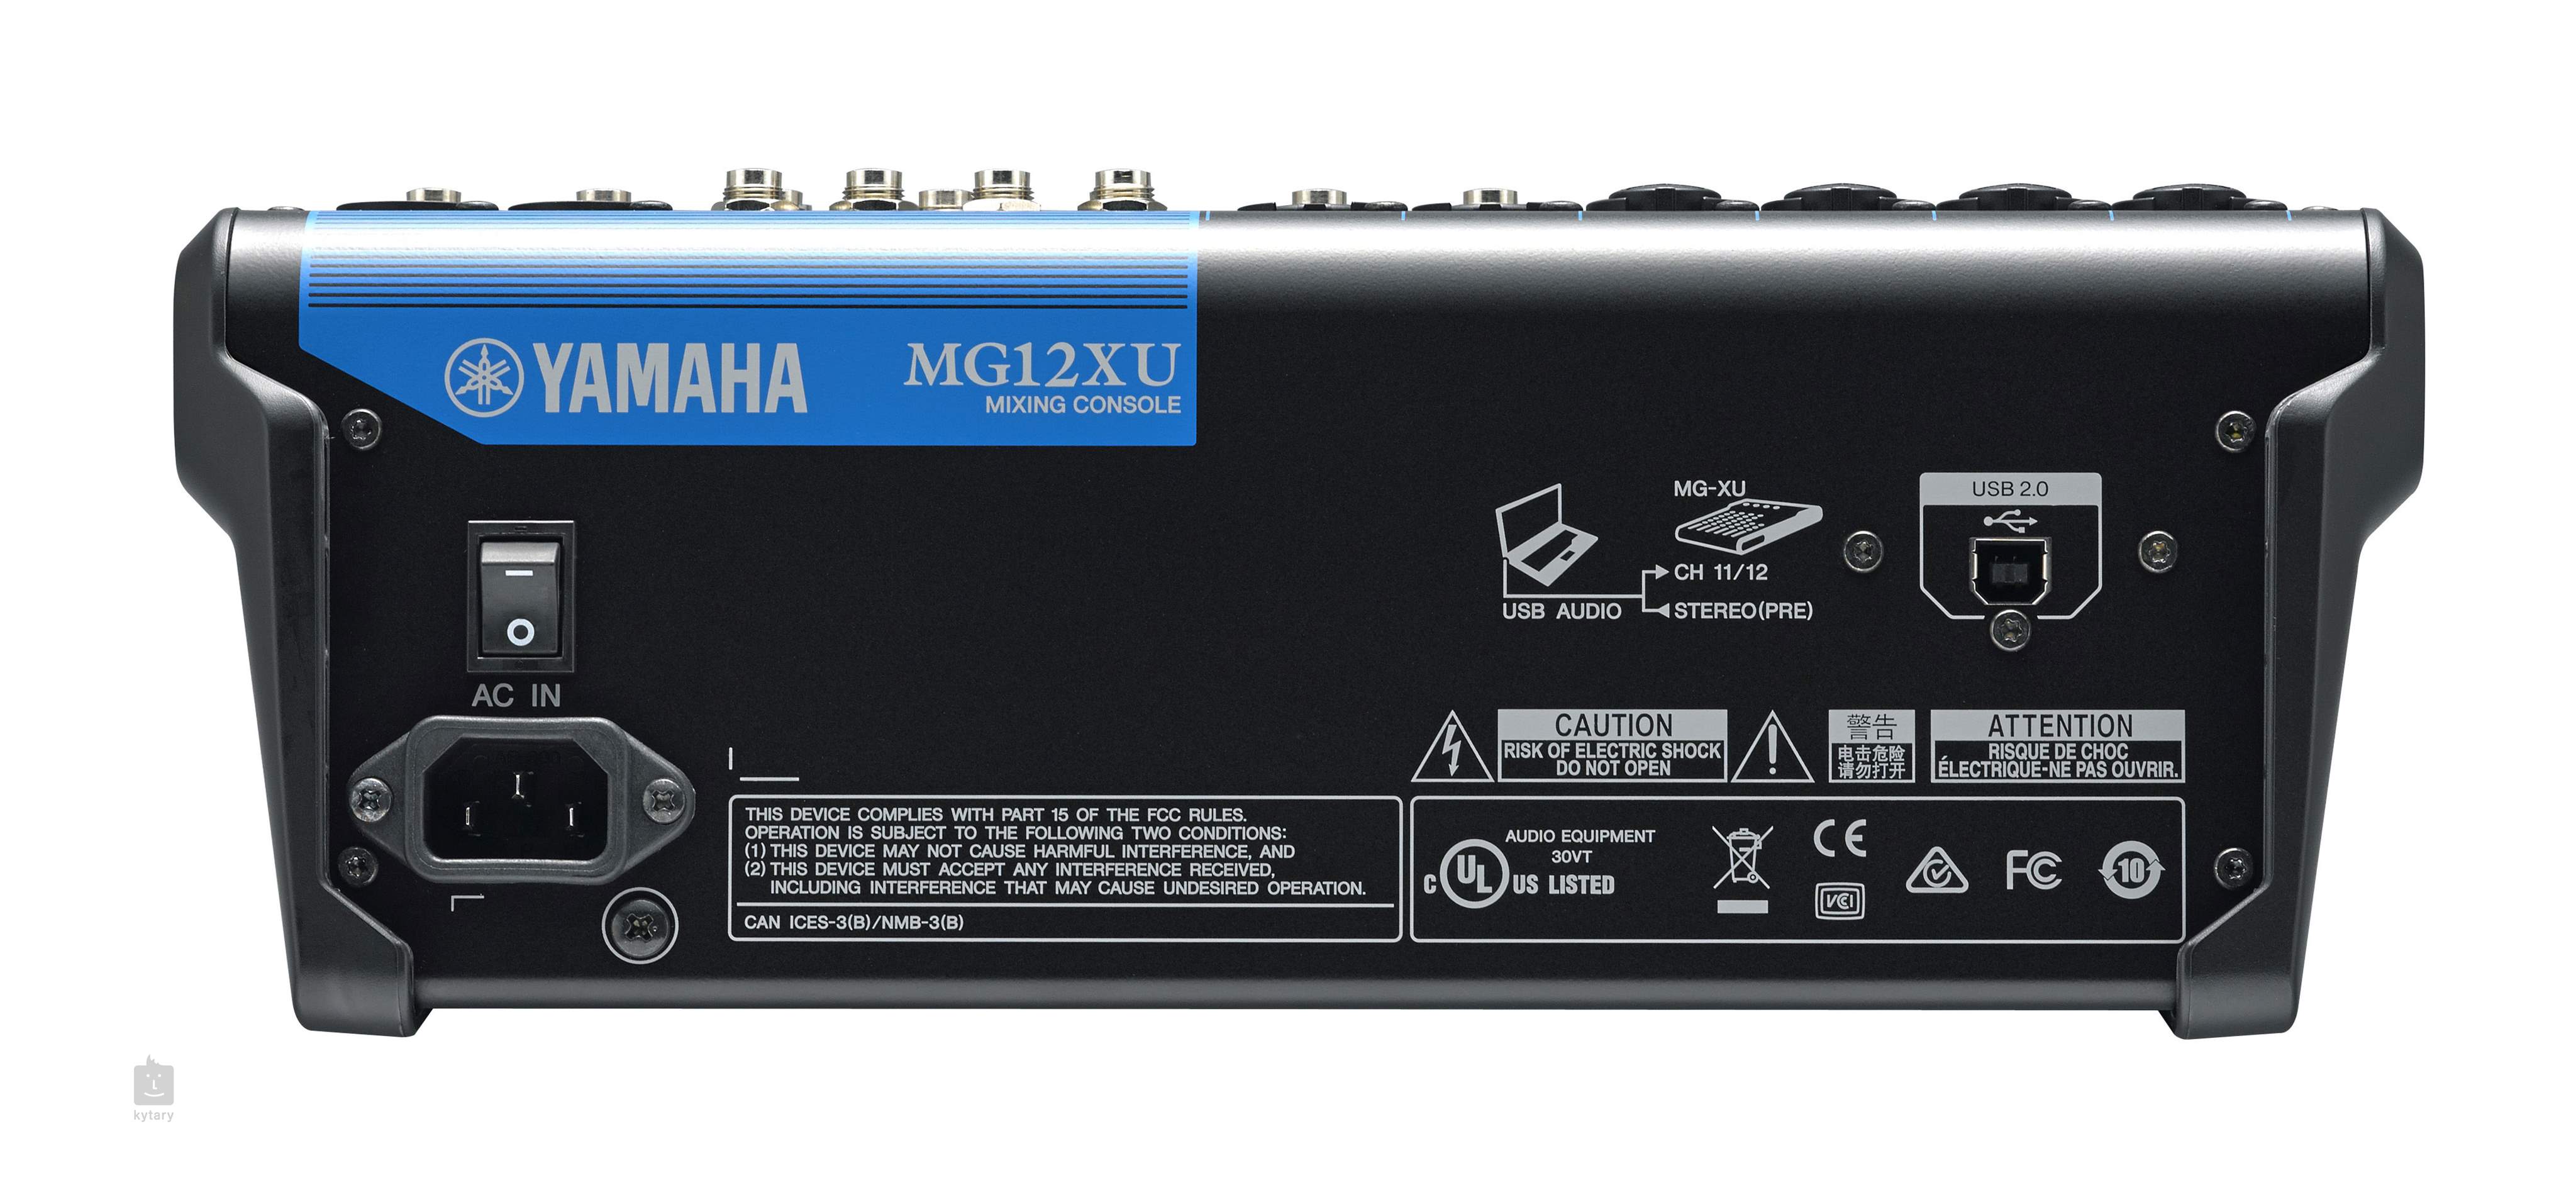 Yamaha Mg12xu Analogue Mixer